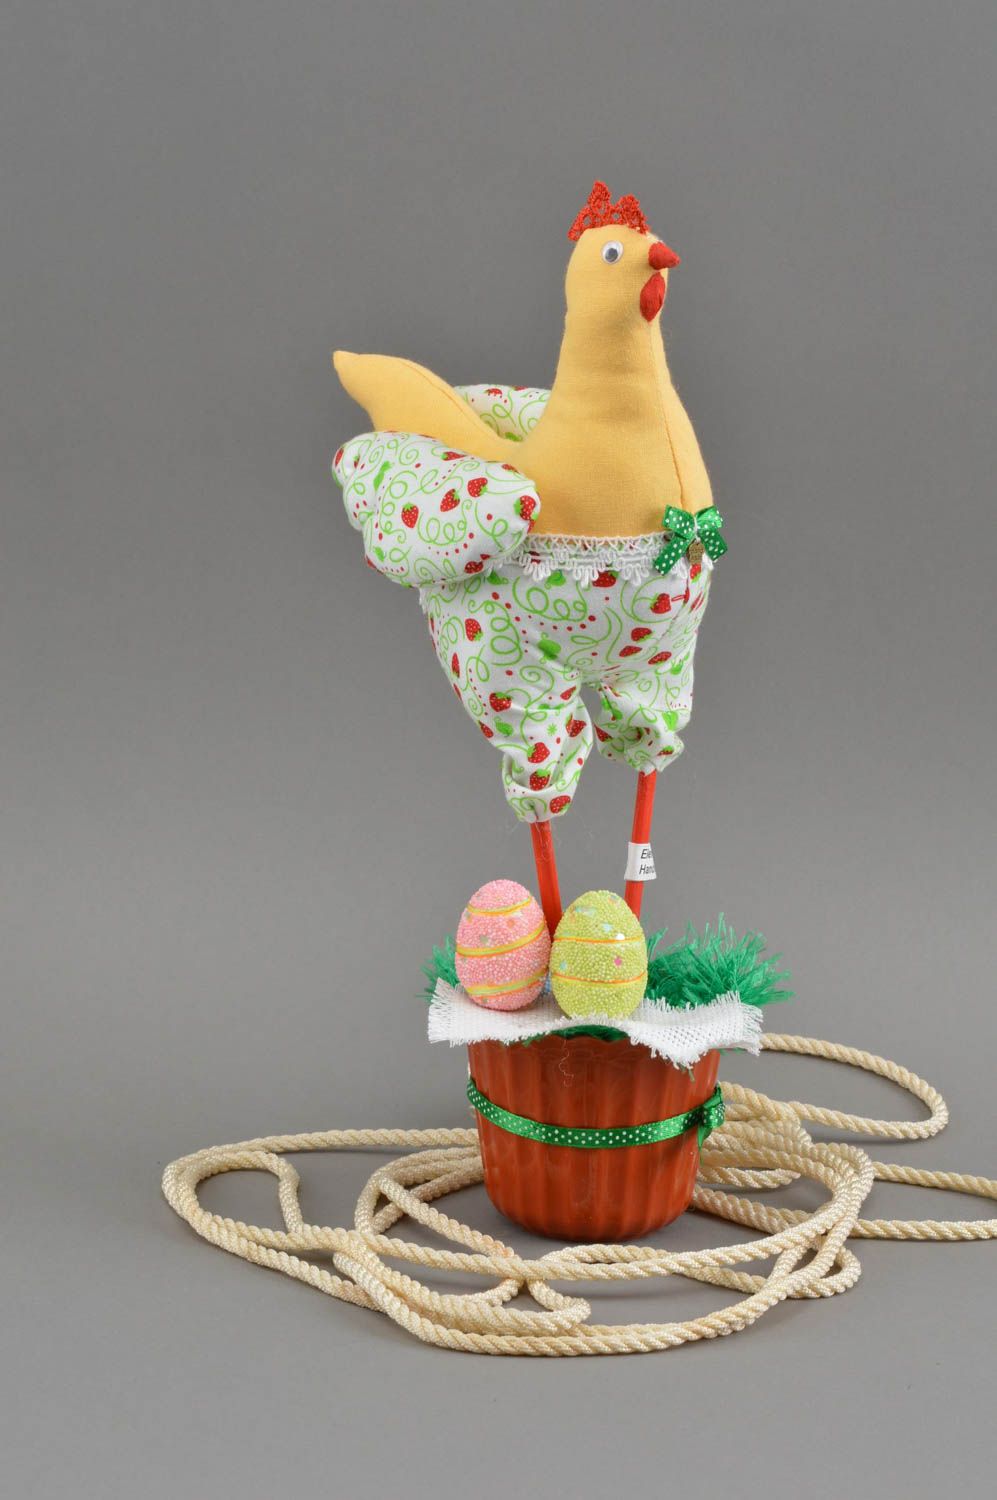 Интерьерная игрушка в виде курицы настольный пасхальный декор ручной работы фото 1